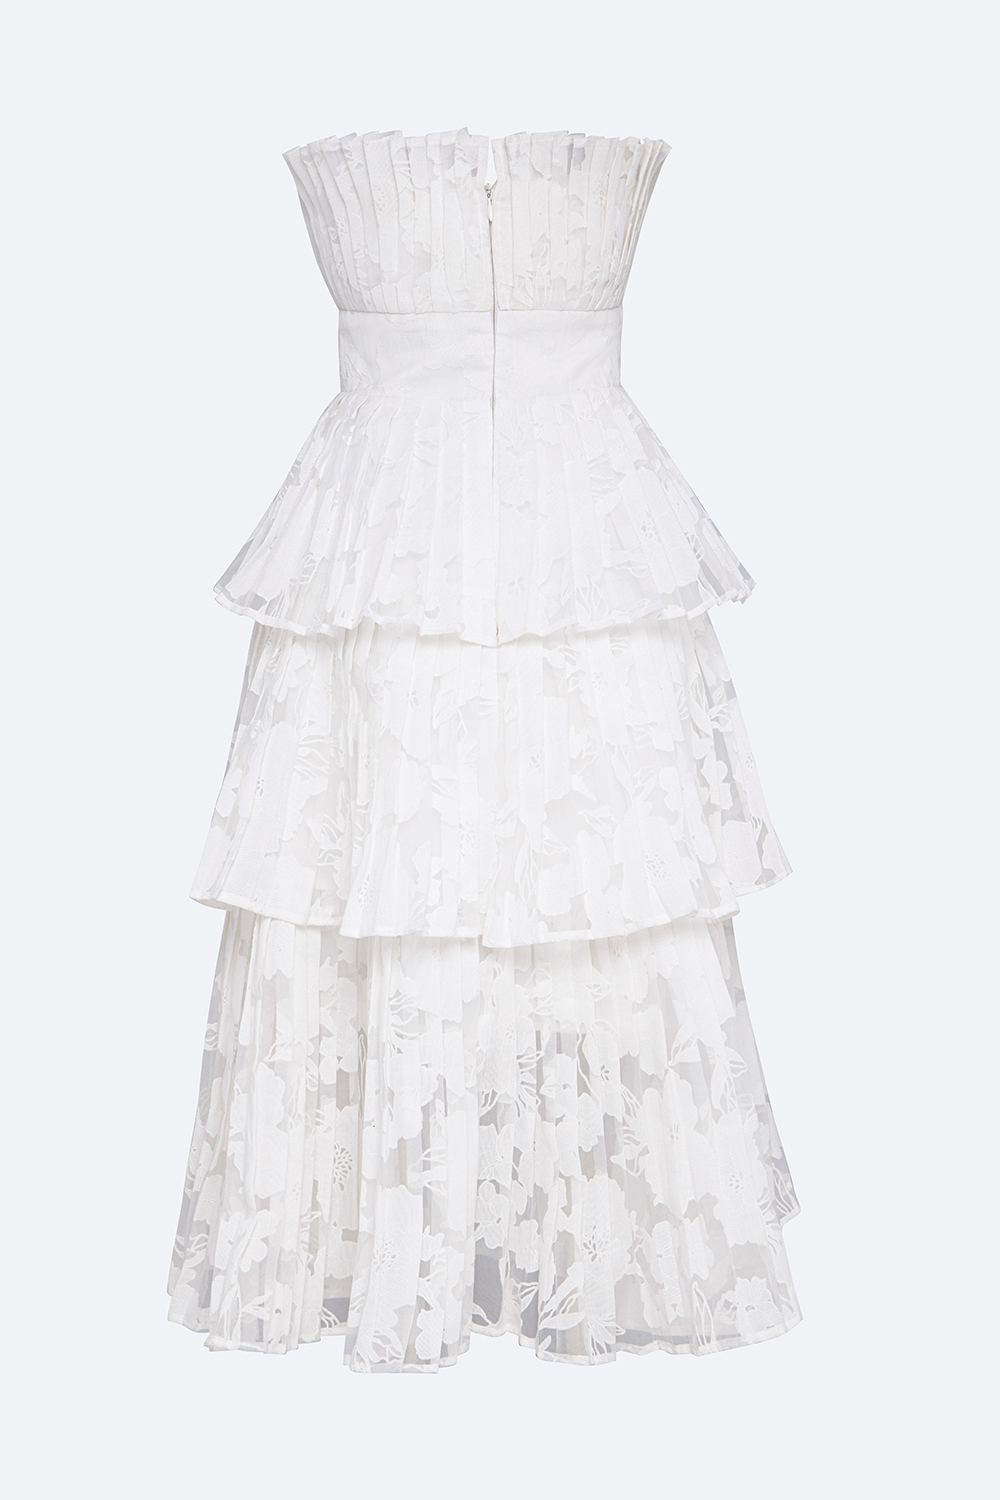 Giảm giá Váy babydoll voan xếp tầng / đầm trắng dài công chúa , sản phẩm có  kiểu dáng đơn giản, trẻ trung, thiết kế thoải mái, dễ mặc, dễ kết hợp